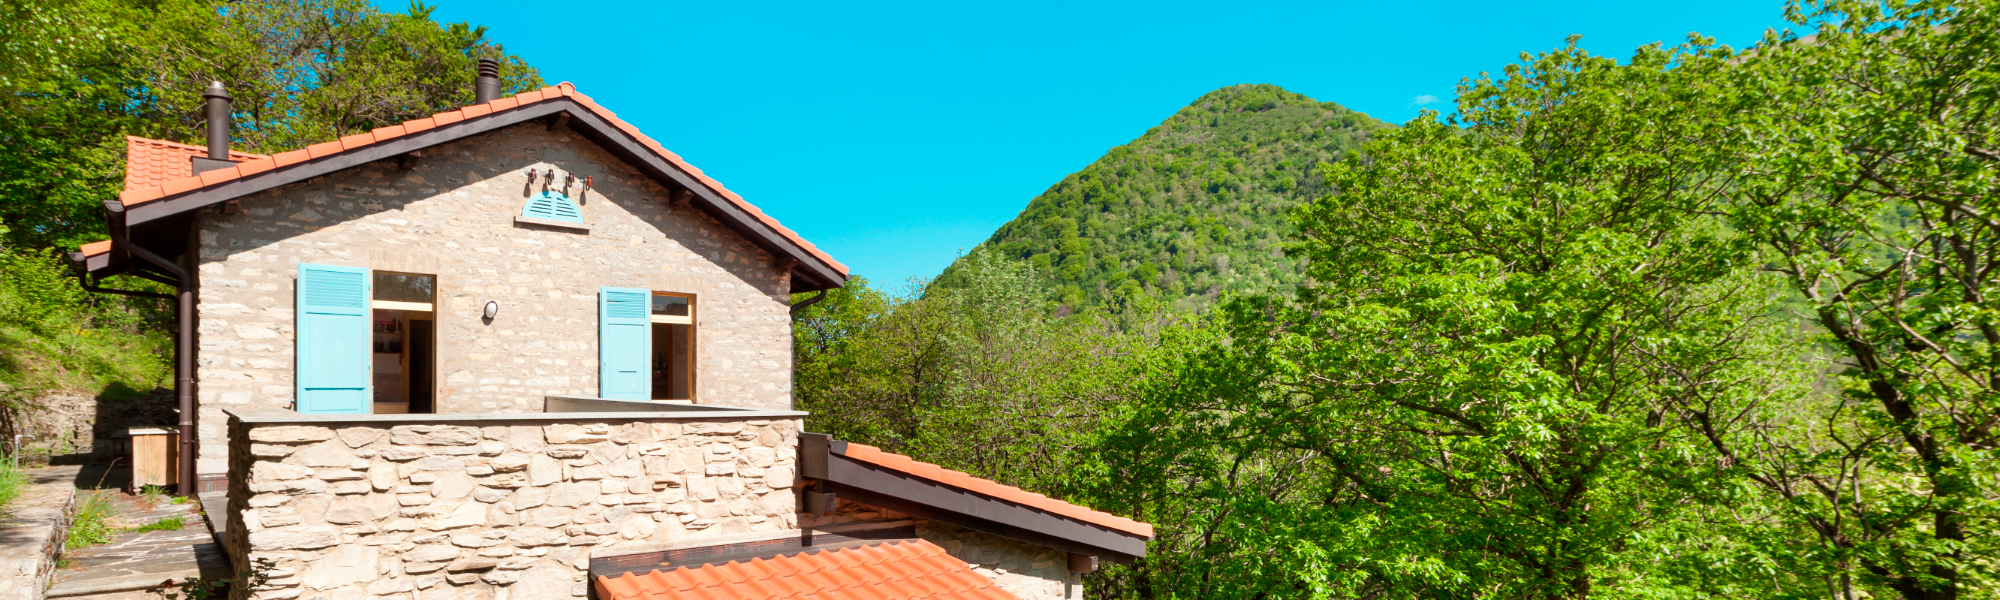 Tenemos la casa de sus sueños en Asturias. CUETO GESTORES INMOBILIARIOS SL en Oviedo